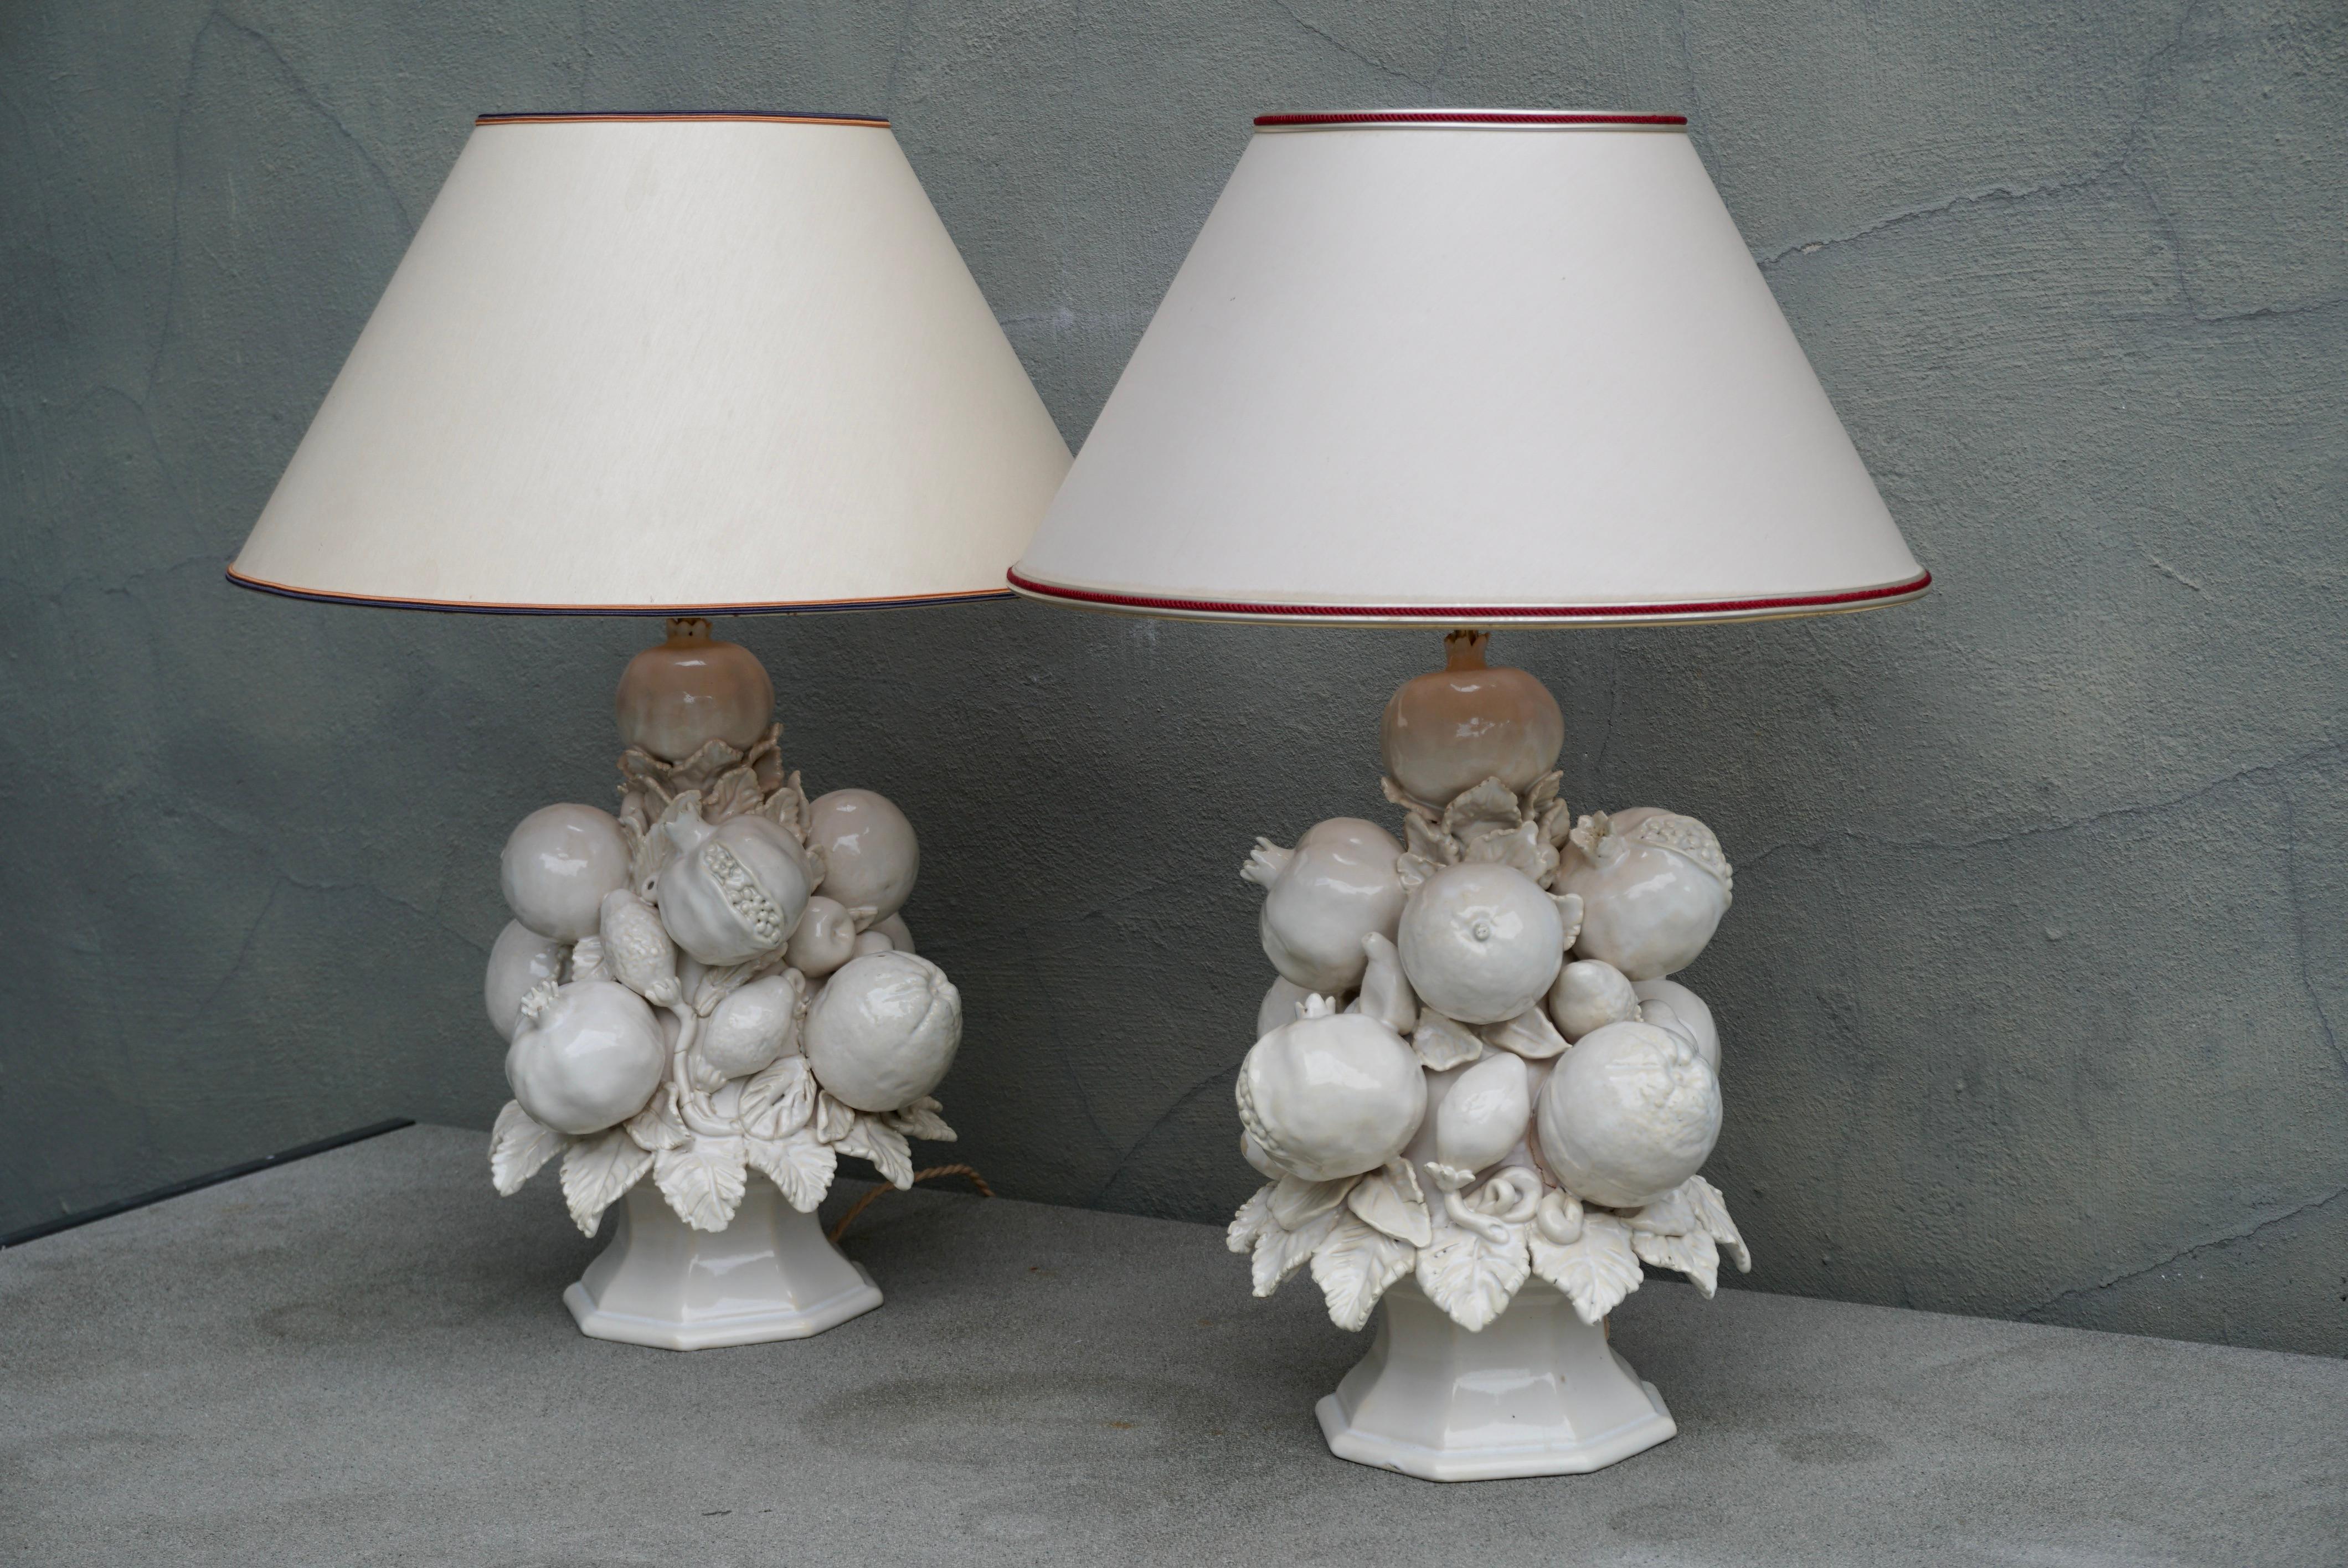 Deux belles lampes de table en céramique émaillée blanche des années 1950 fabriquées en Italie ou en Espagne par Cerámica Bondia.
Fabriqué à la main avec des fruits et des feuilles dans un vase.

Diamètre - 11.8